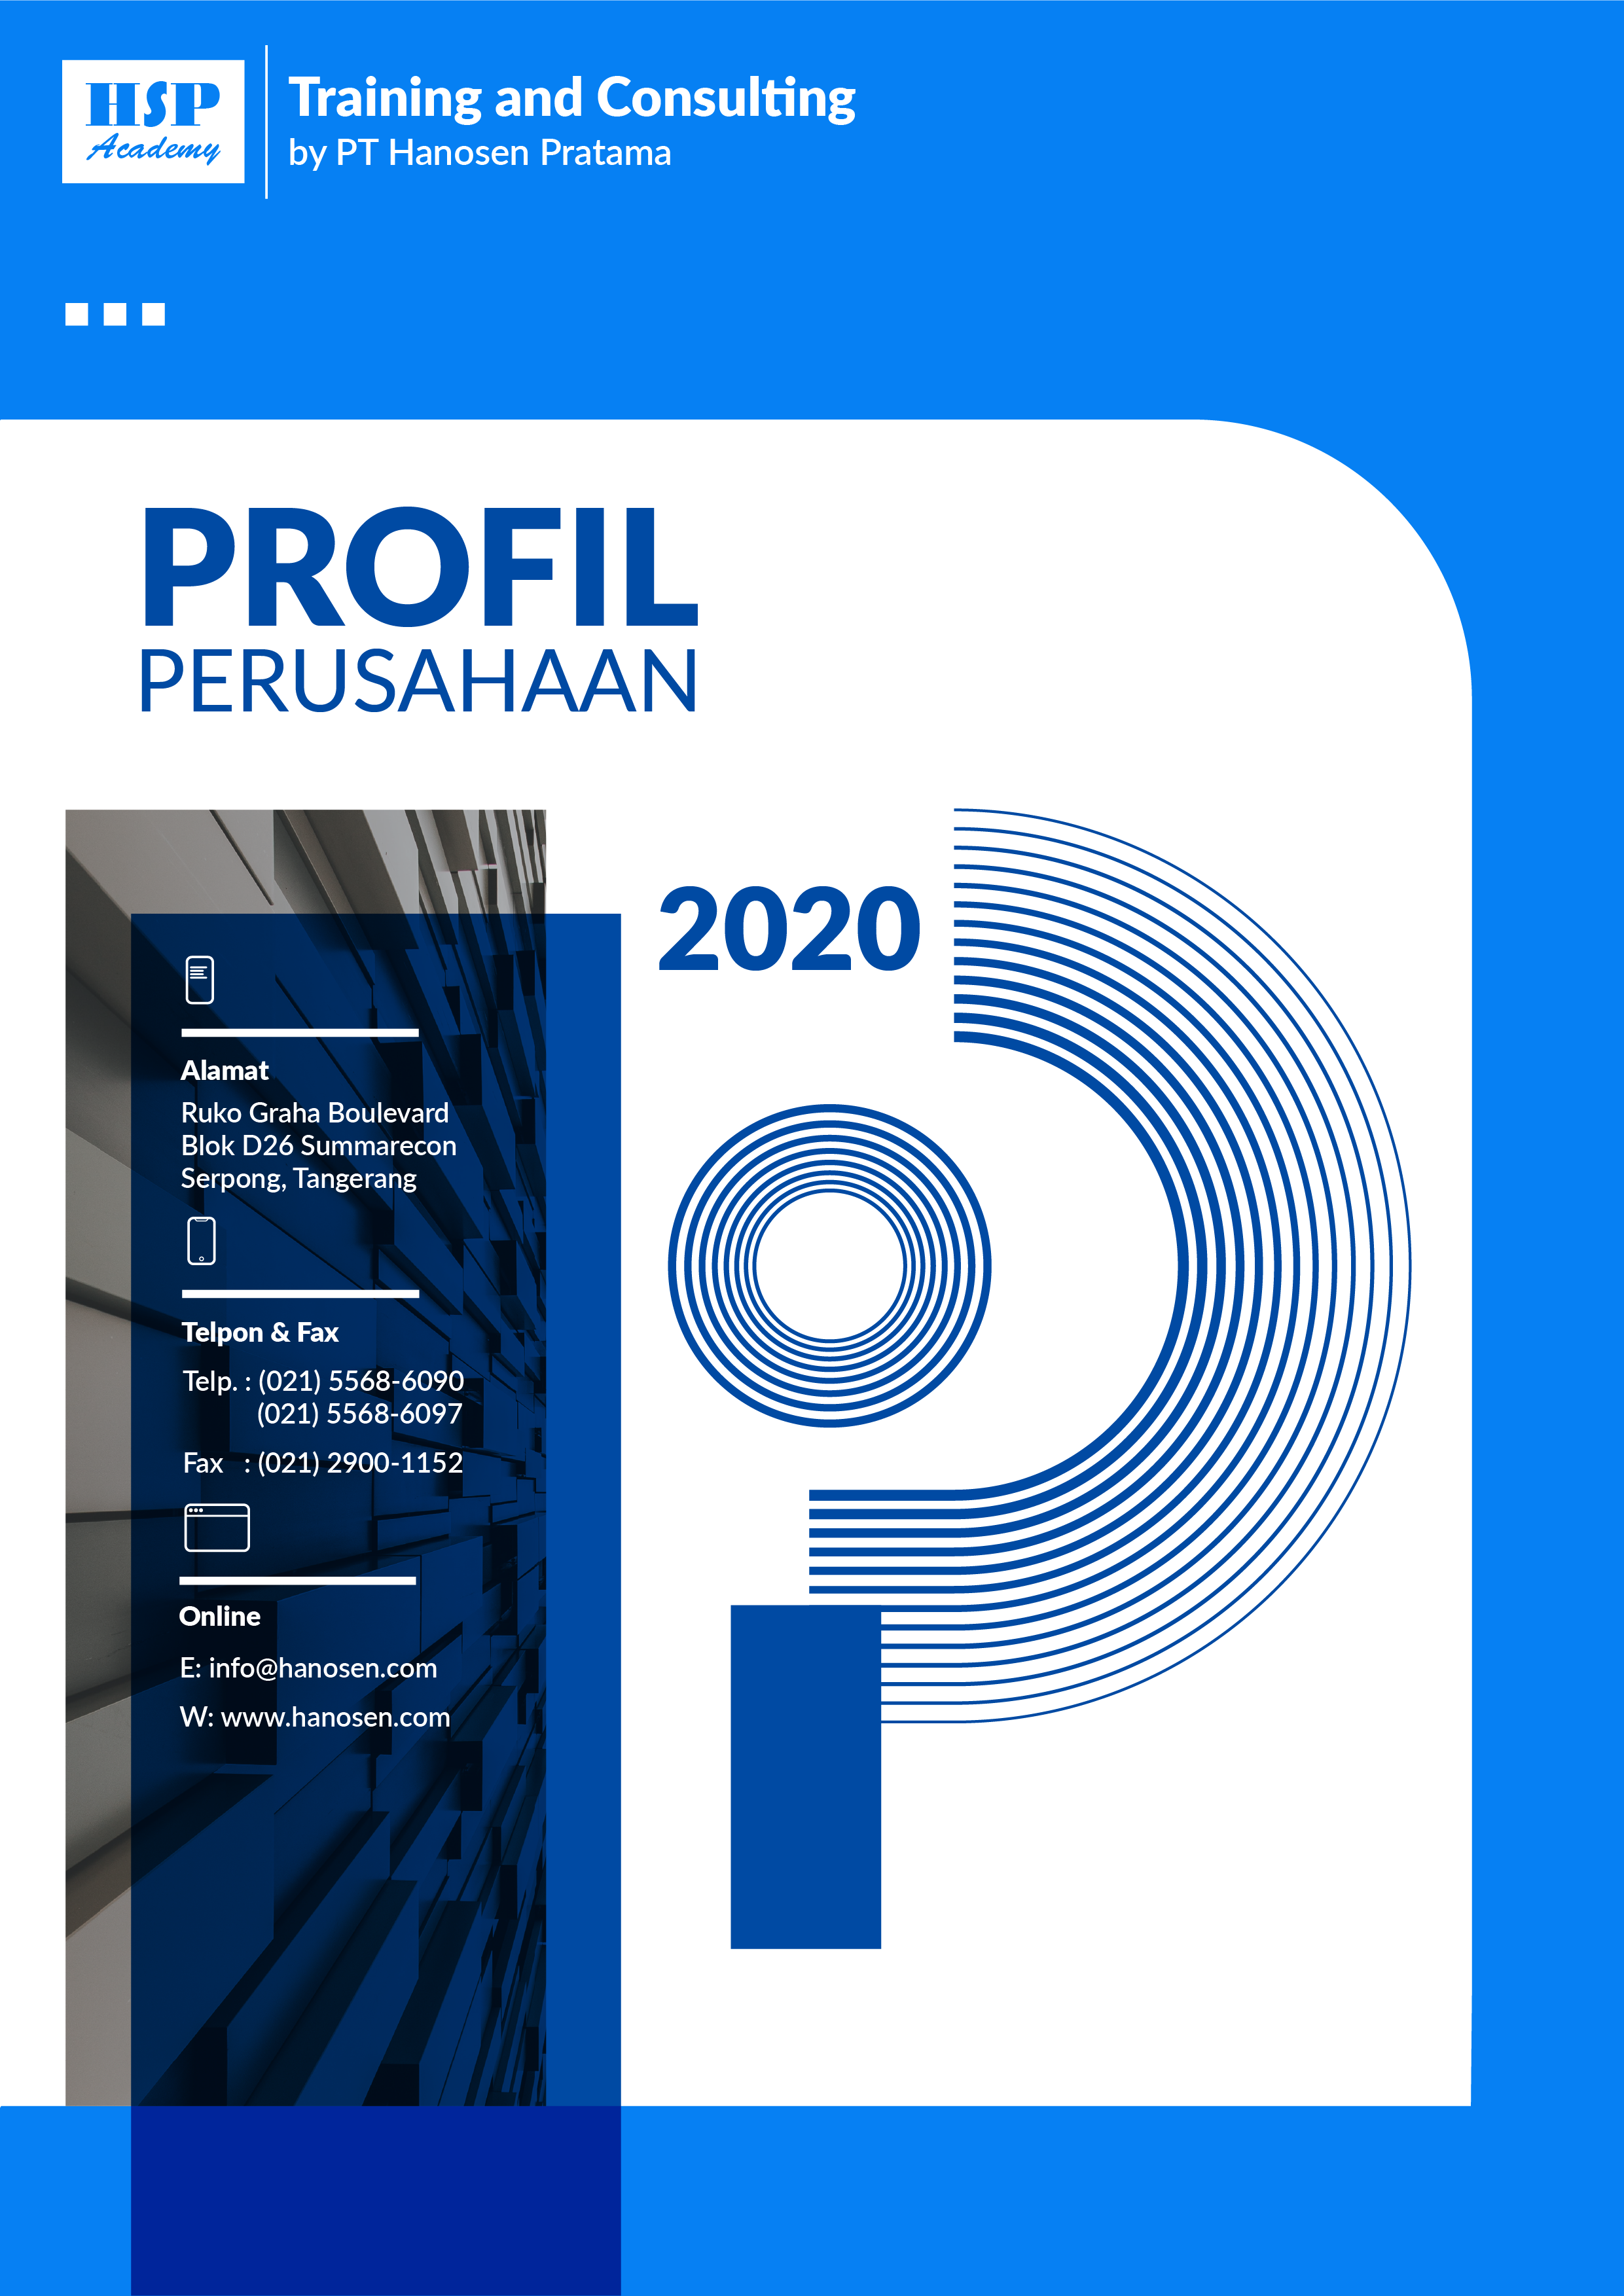 Profil-Perusahaan-HSP-Academy-2020-Bagian-1-01